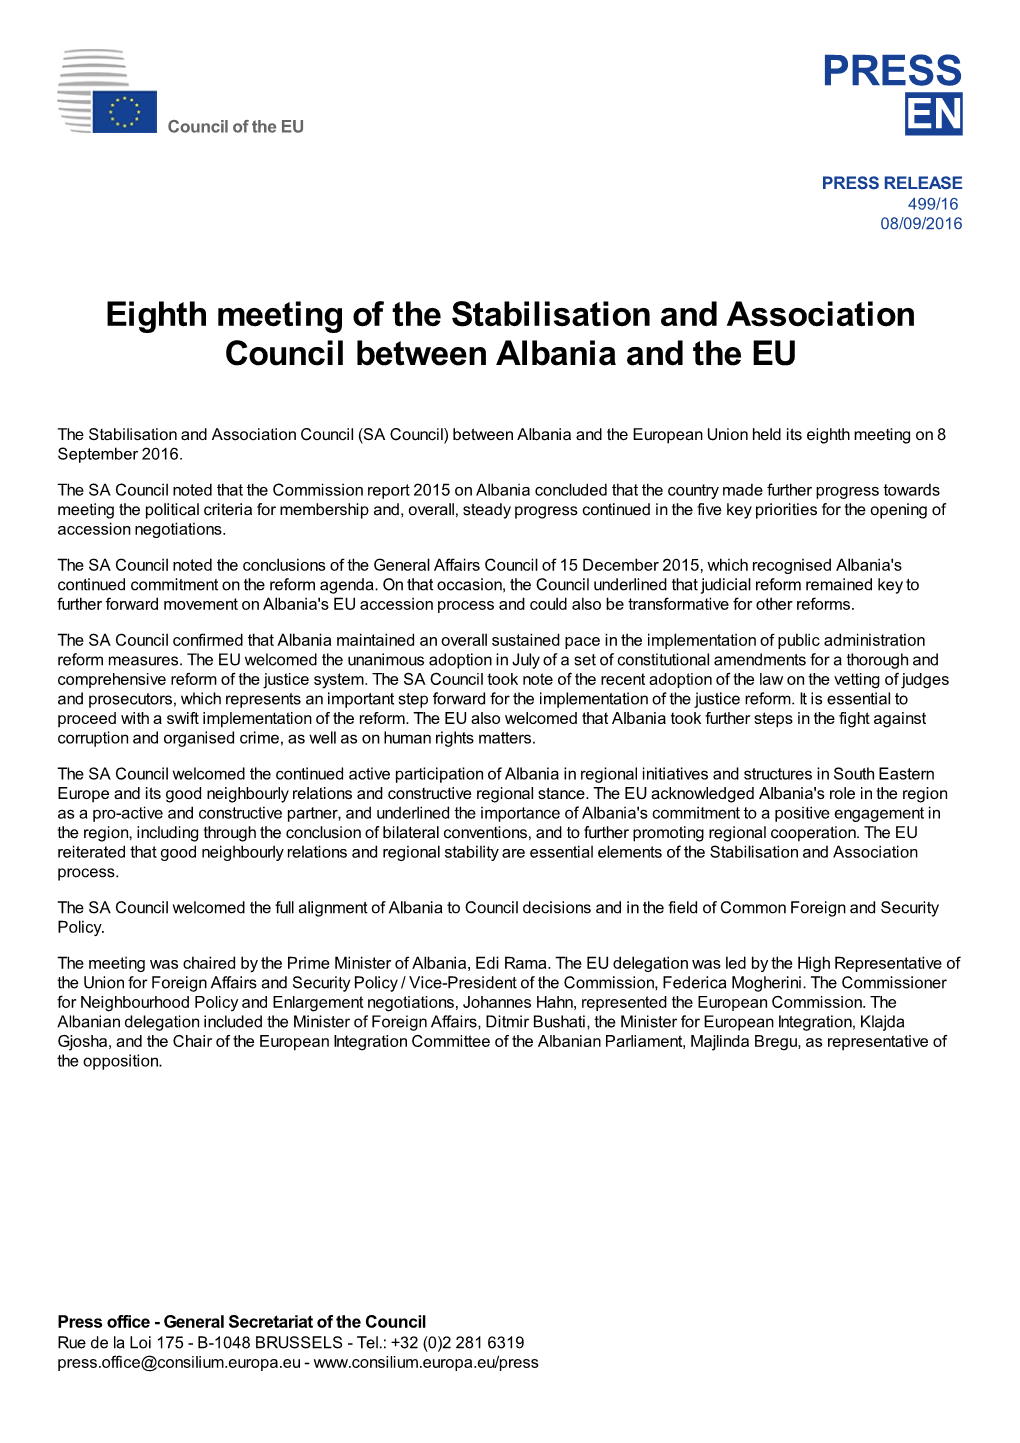 Council of the EU EN